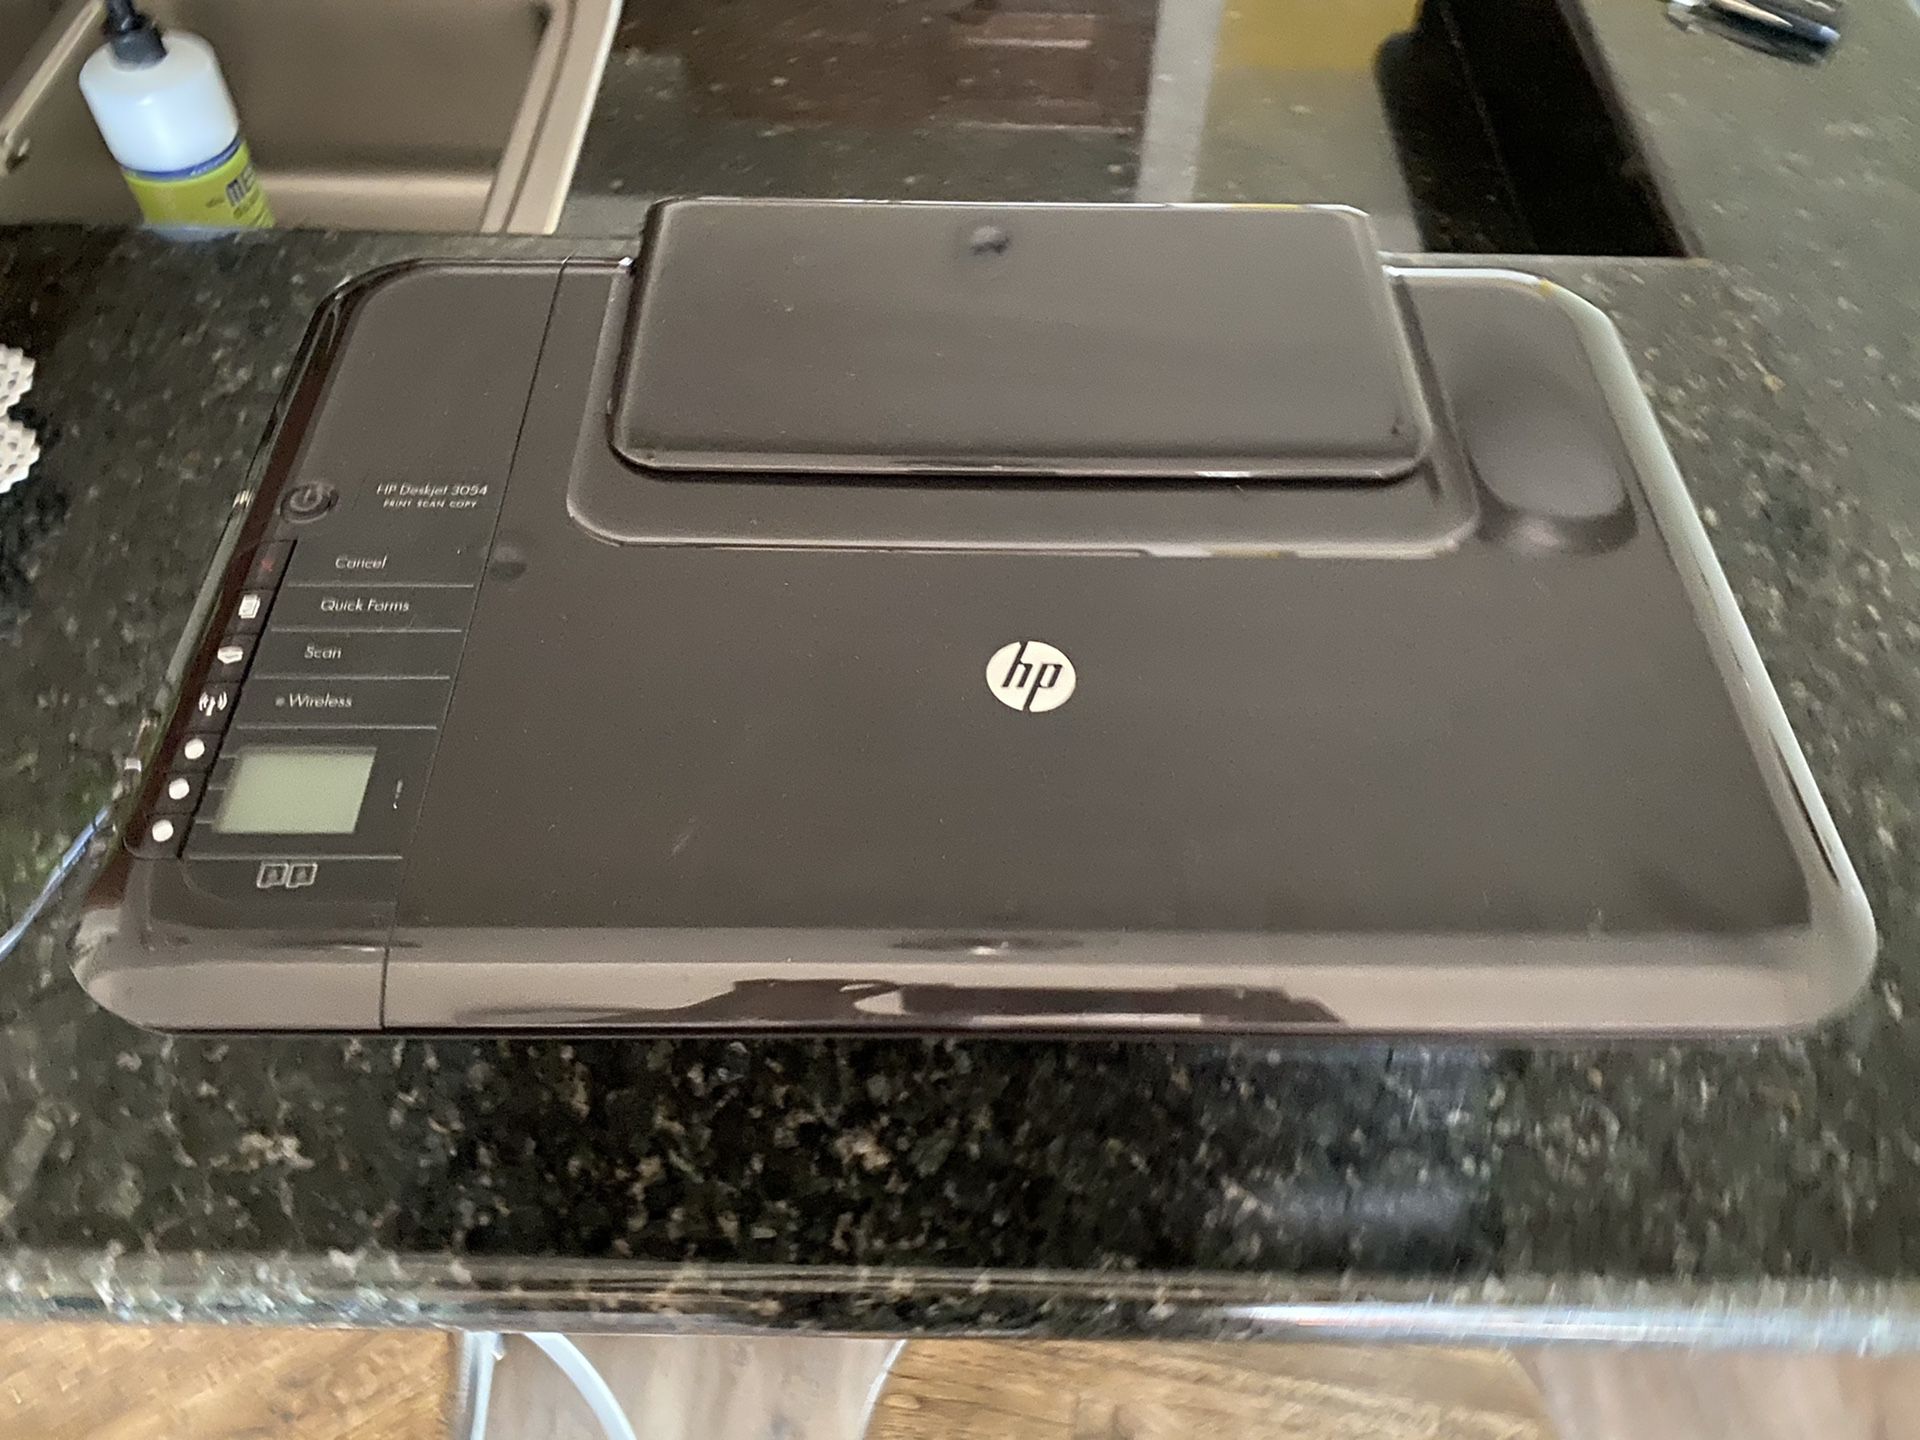 HP 3054 Deskjet Printer/Scanner/Copier - $75 OBO